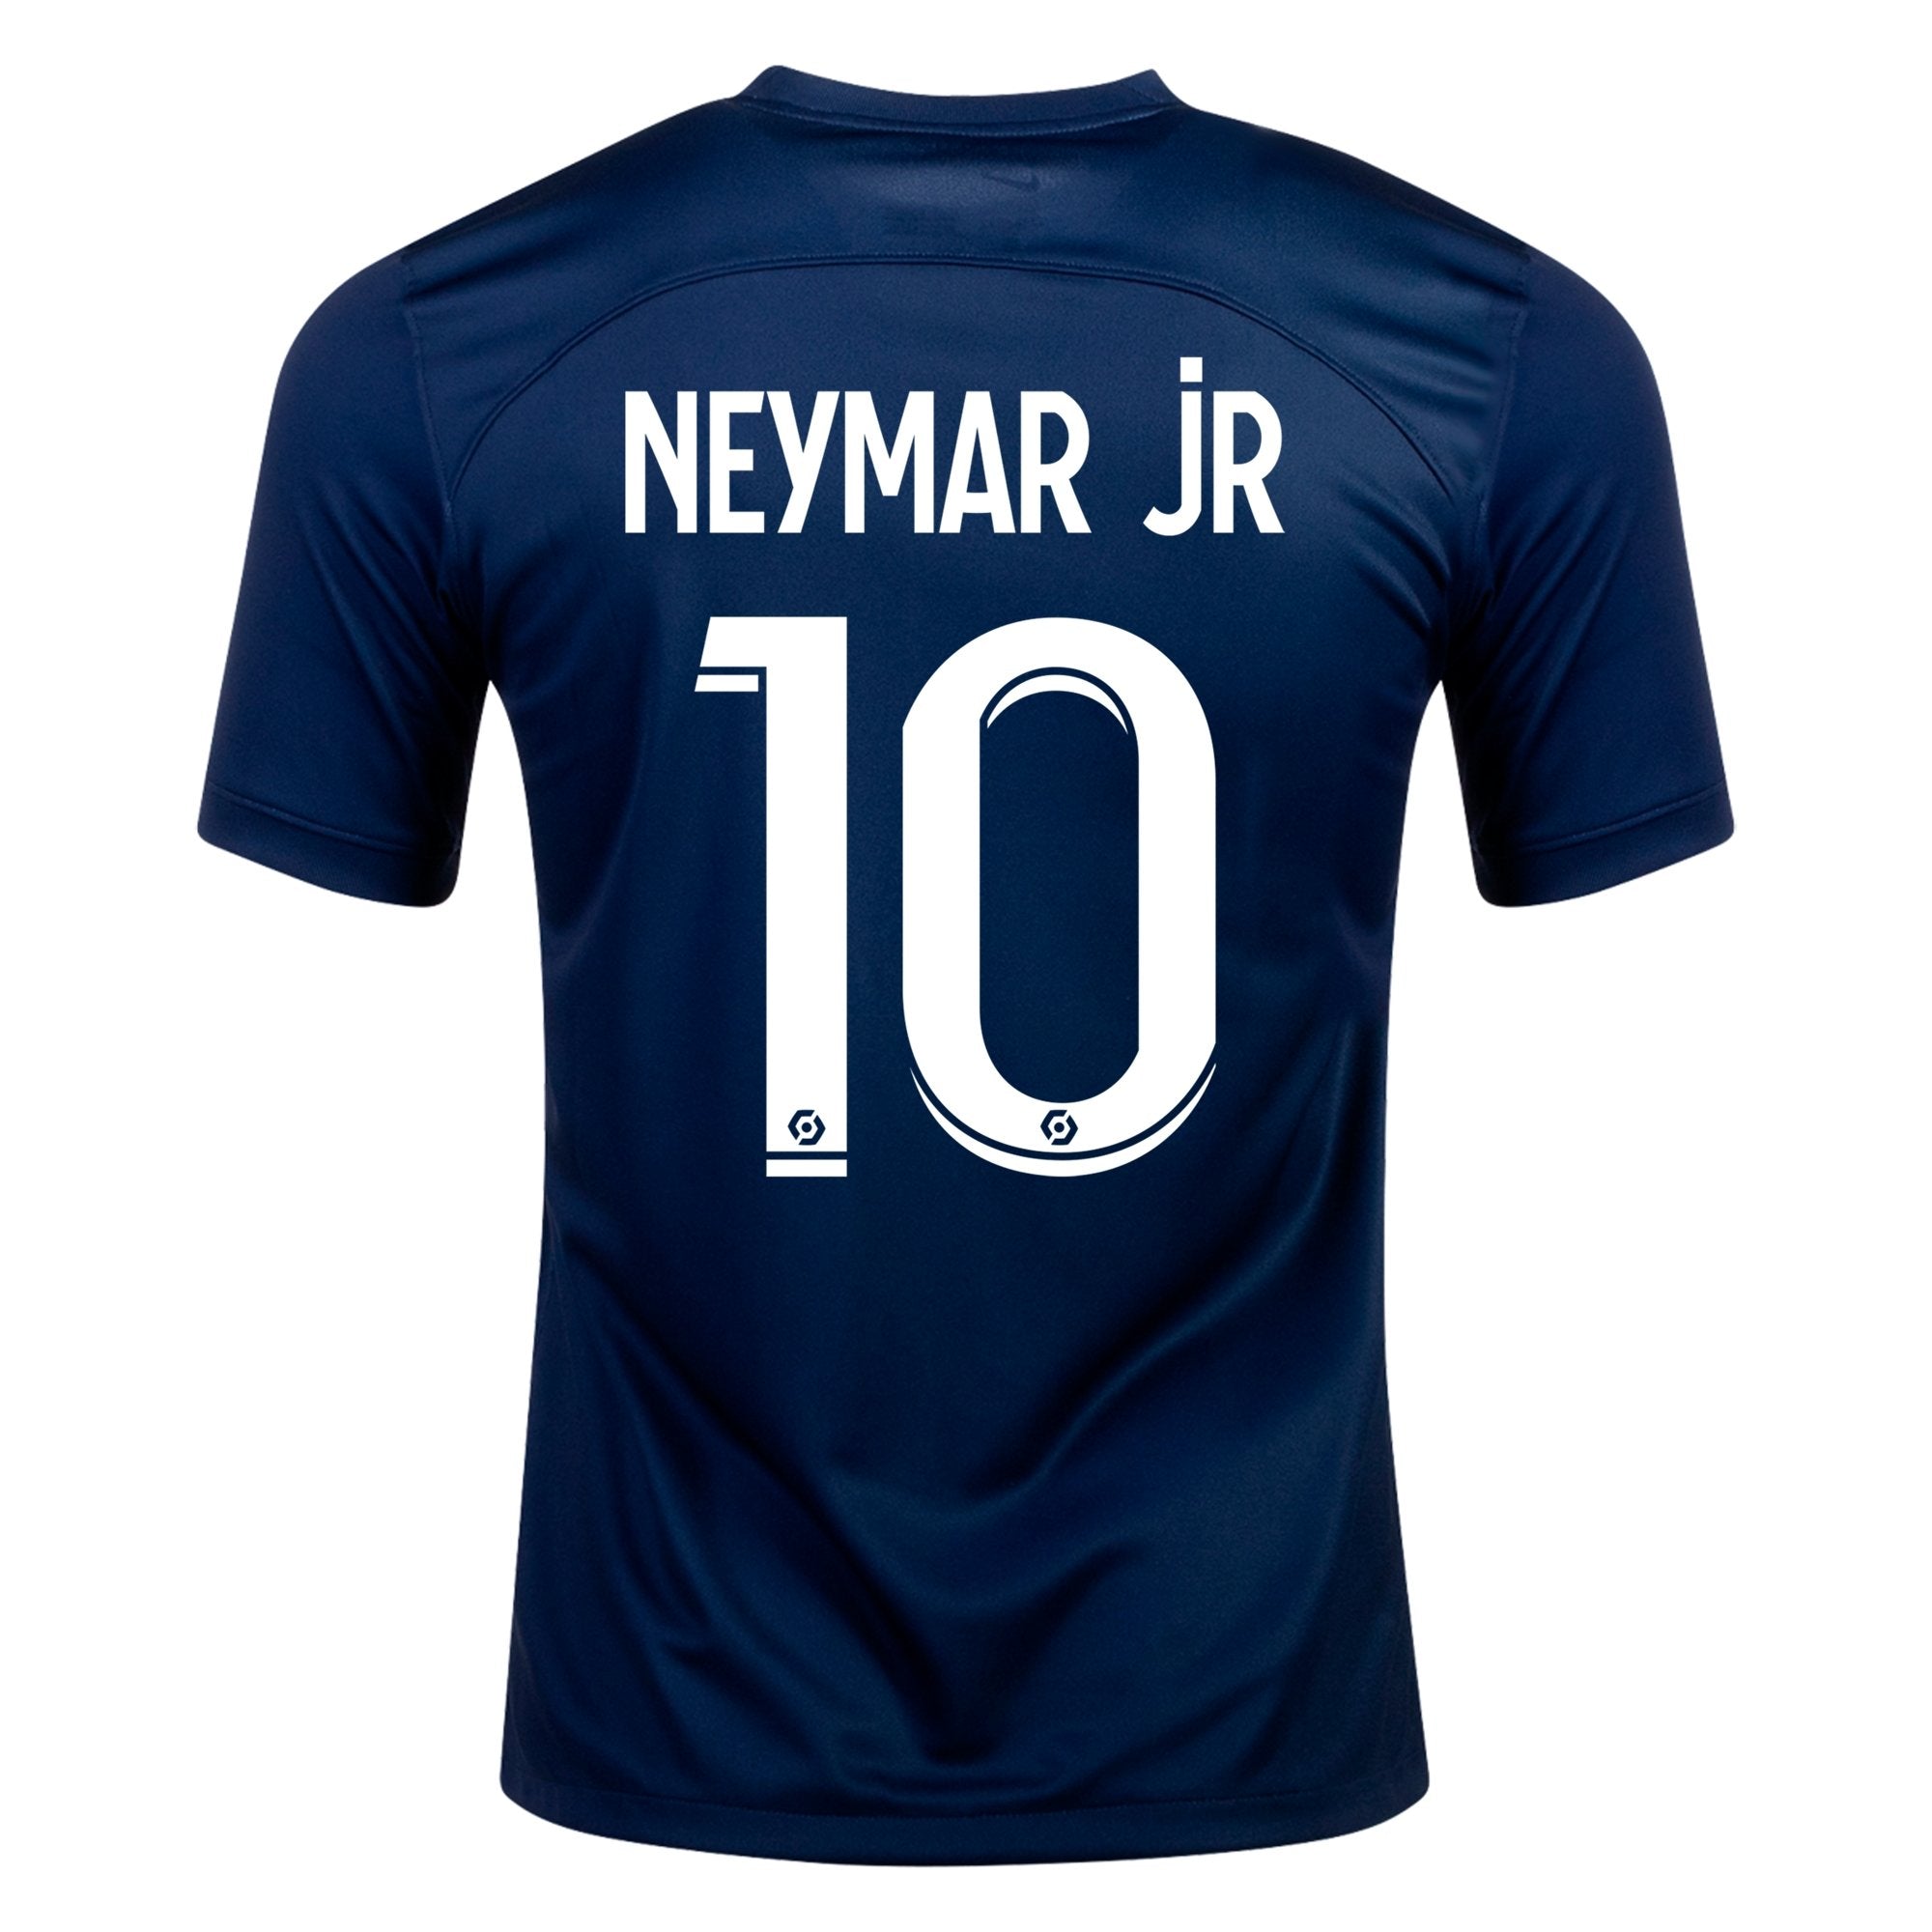 21/22 Psg-paris Saint-germain Team Jersey Neymar Jersey Set 